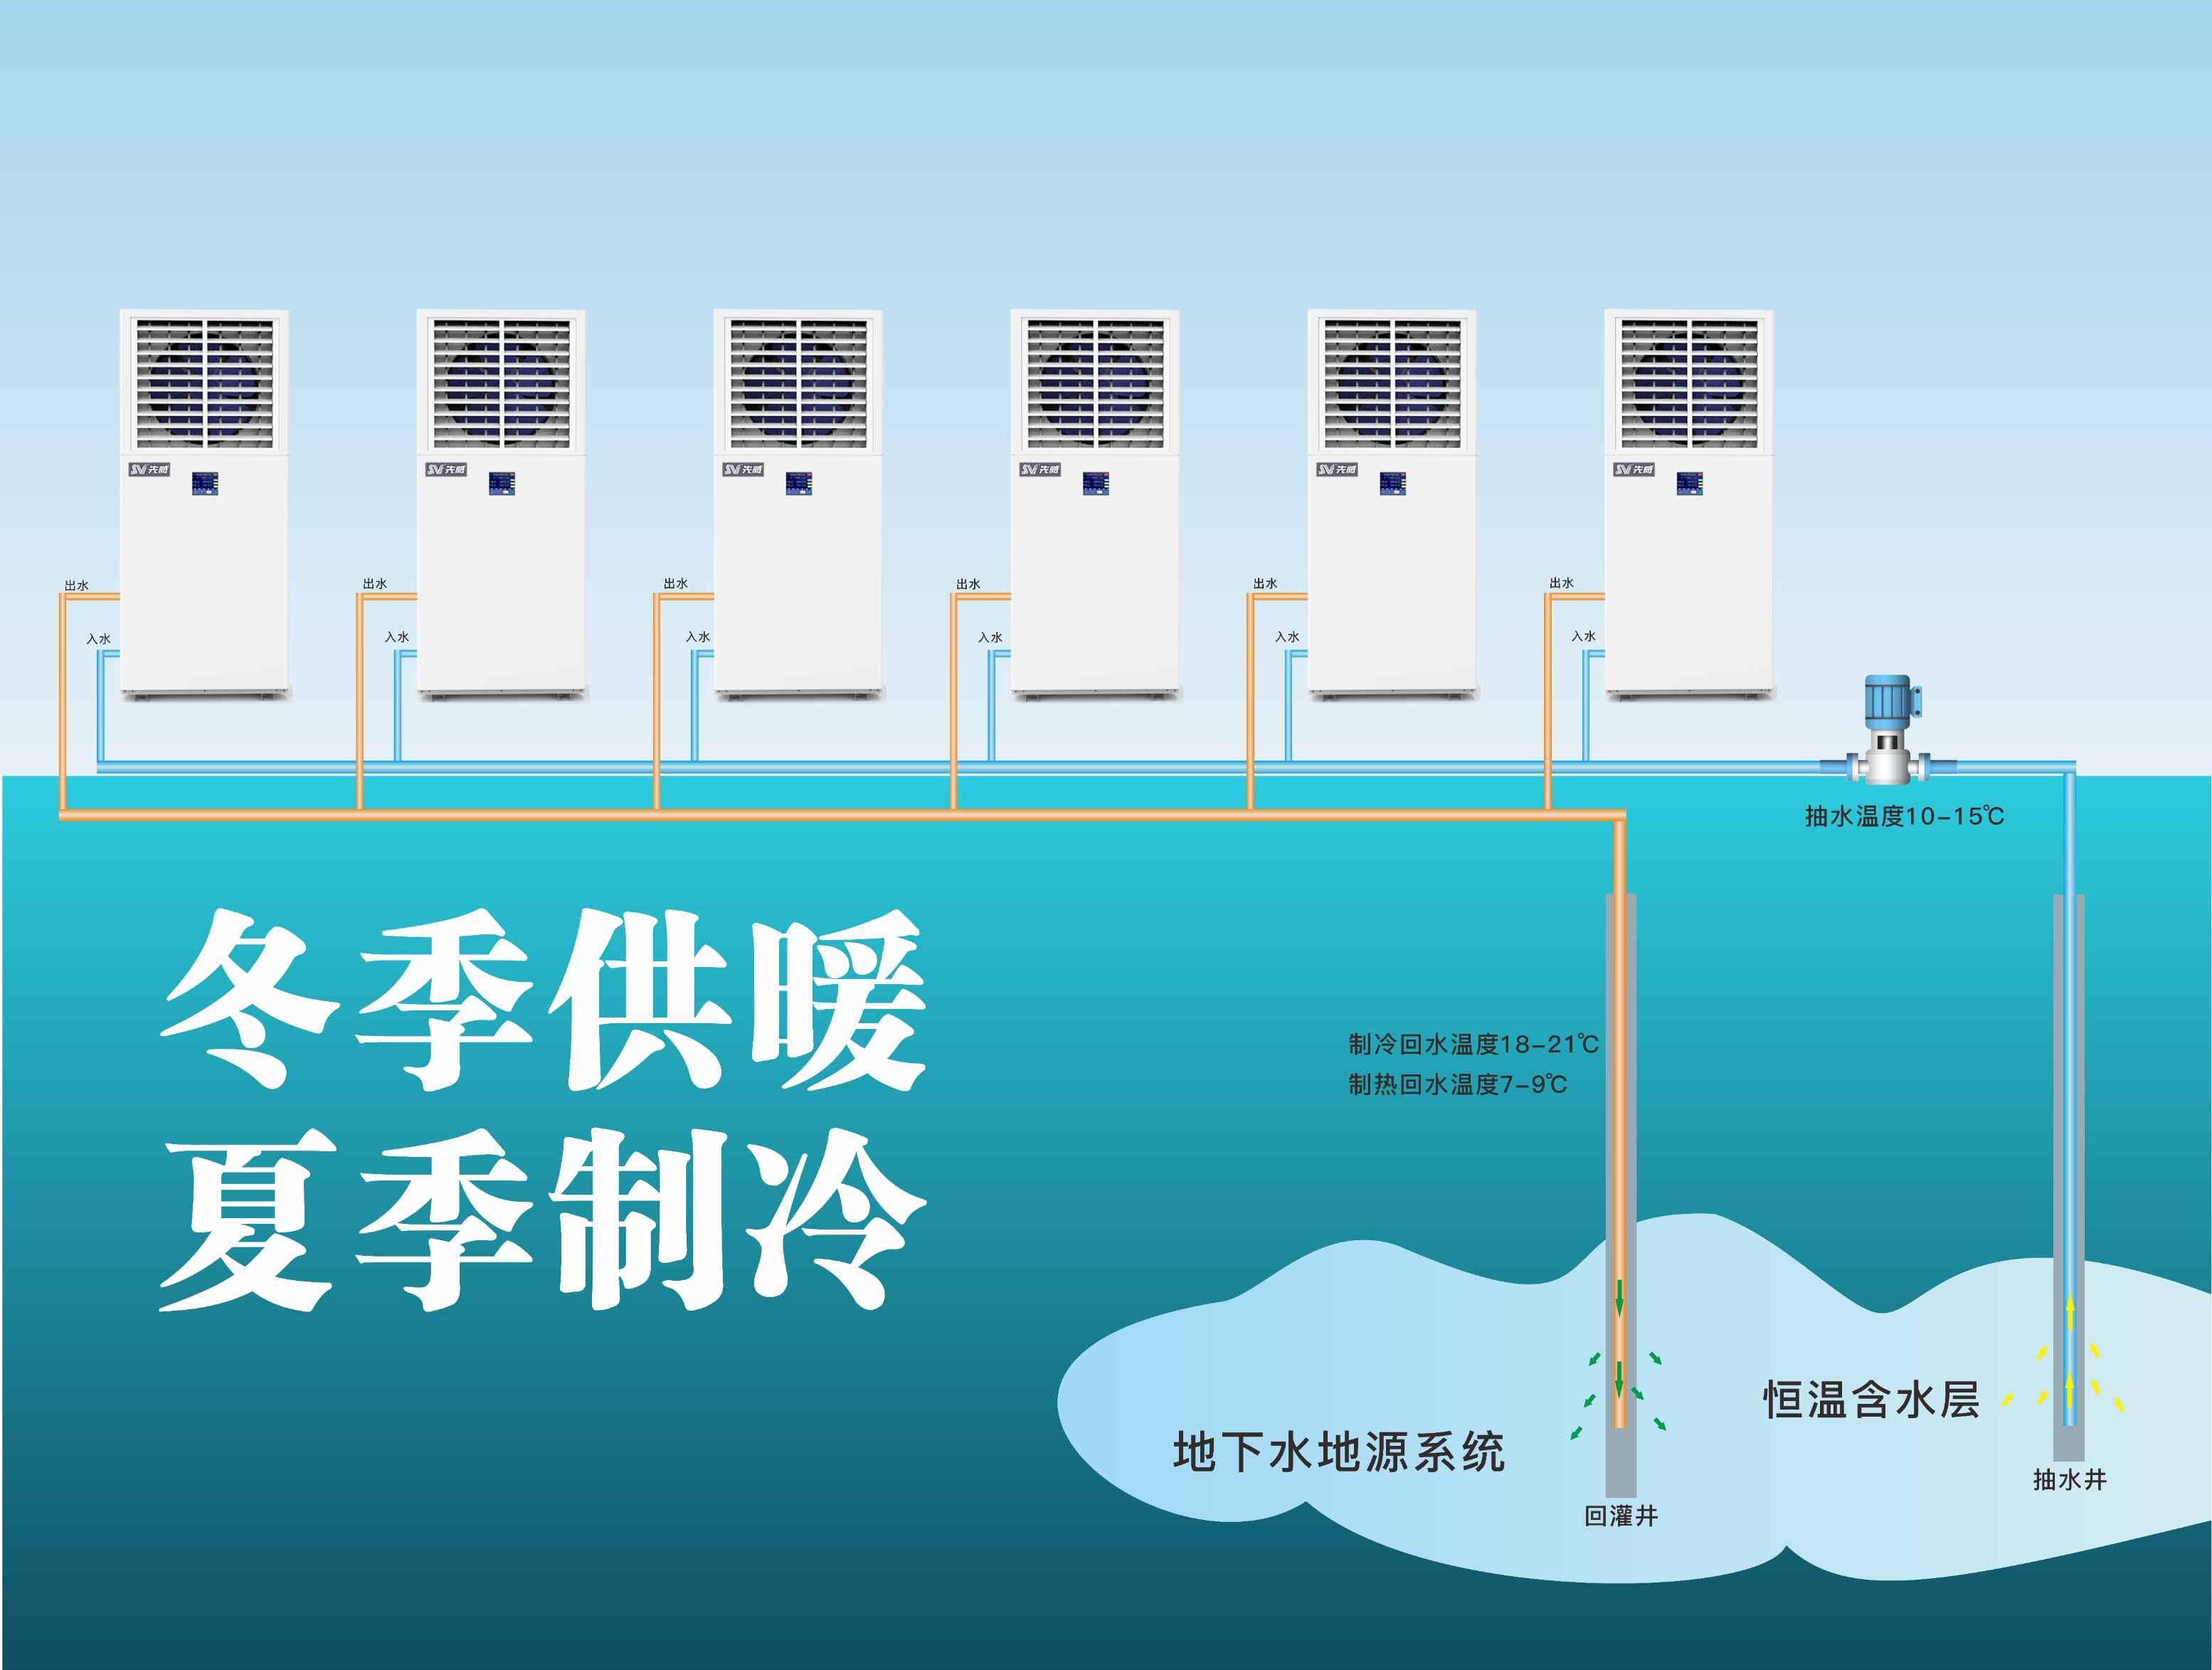 亿能公司 广州蒸发冷工业空调 厂房降温制冷设备